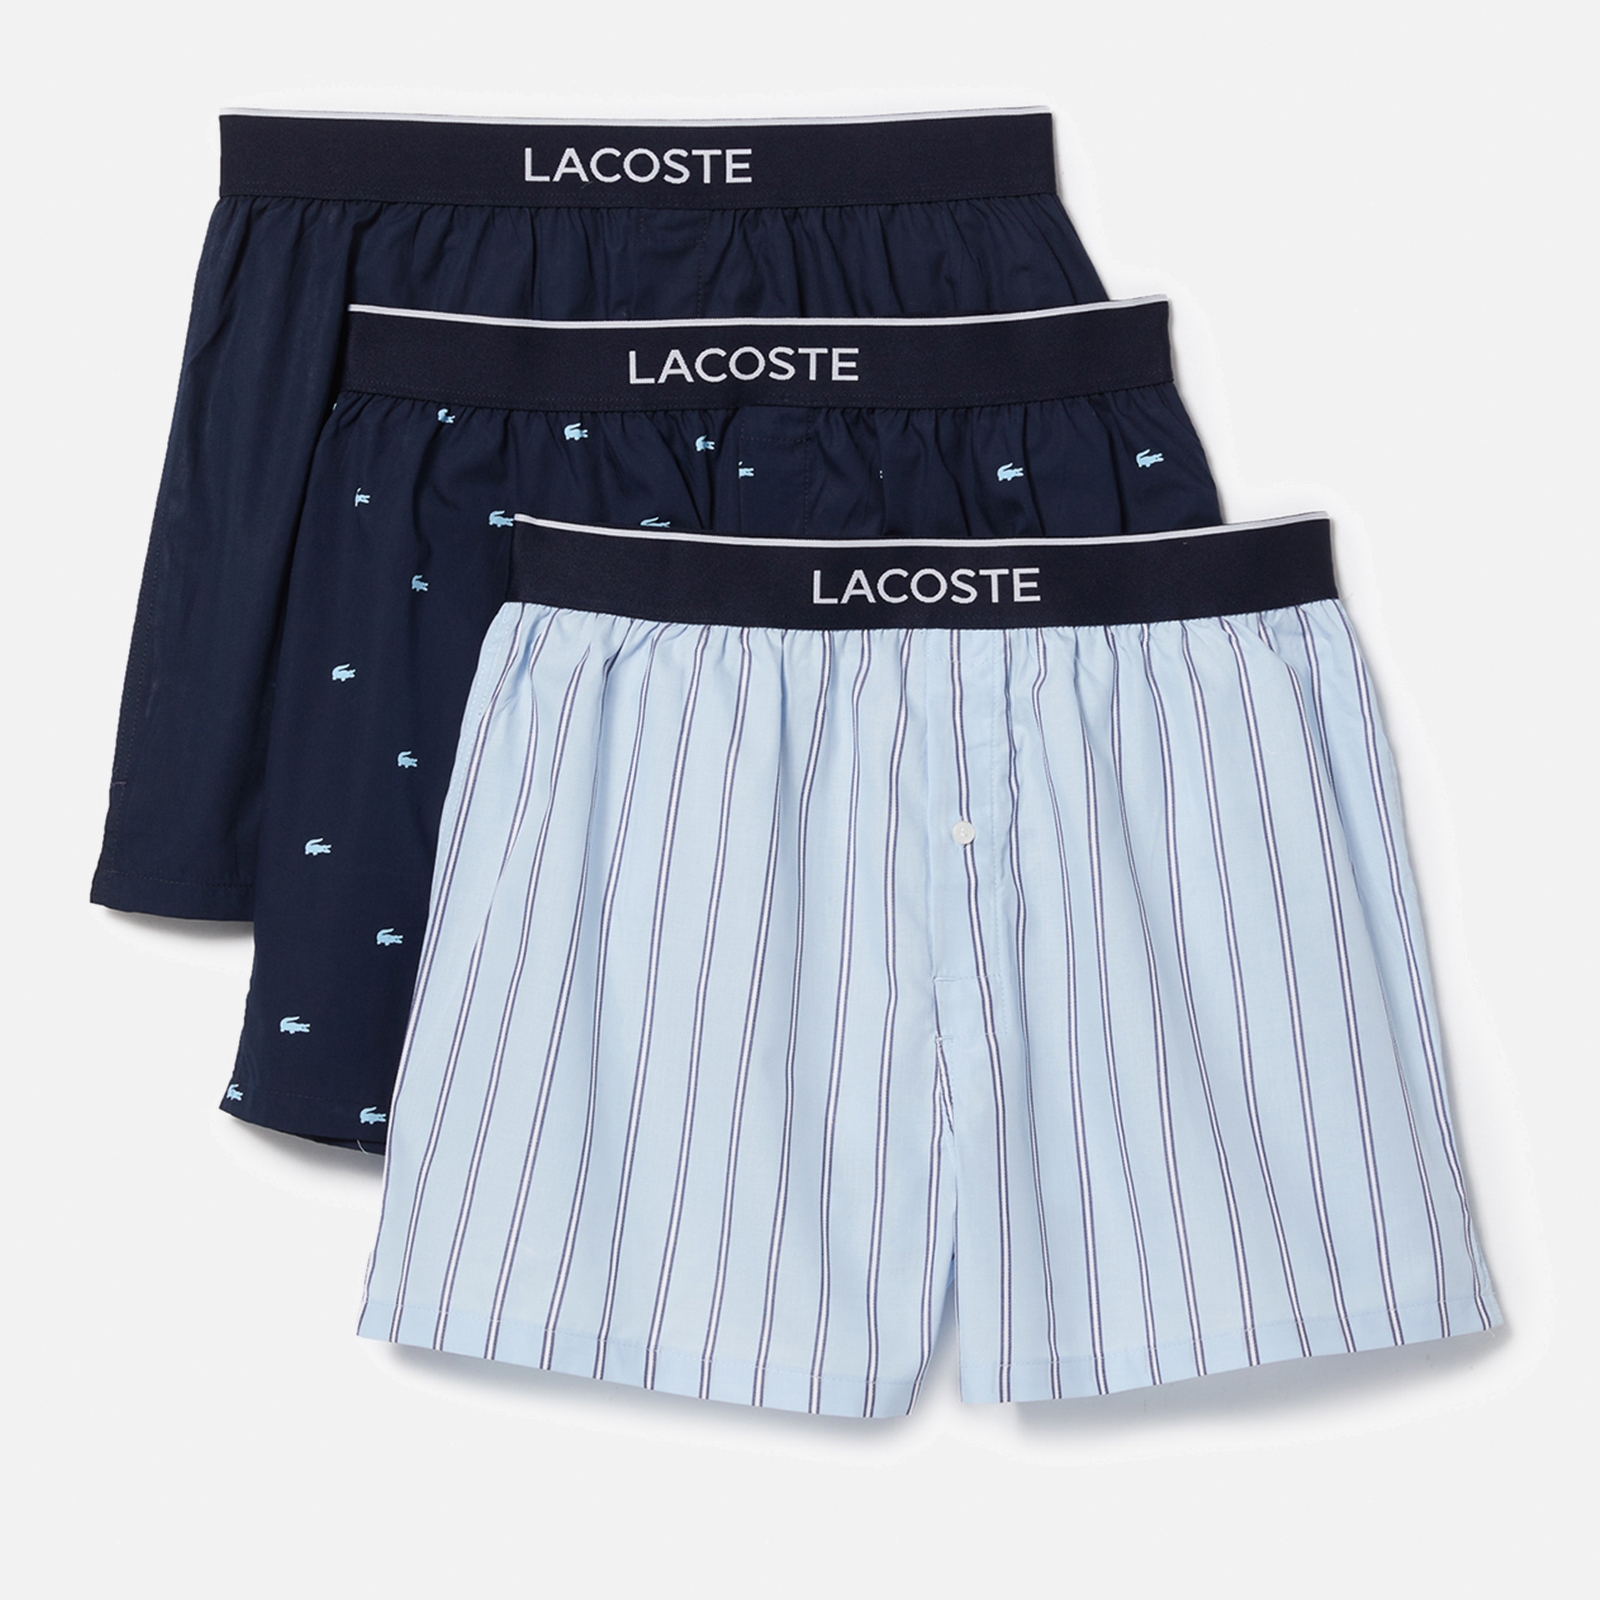 lacoste 3 pack woven cotton boxer shorts - m